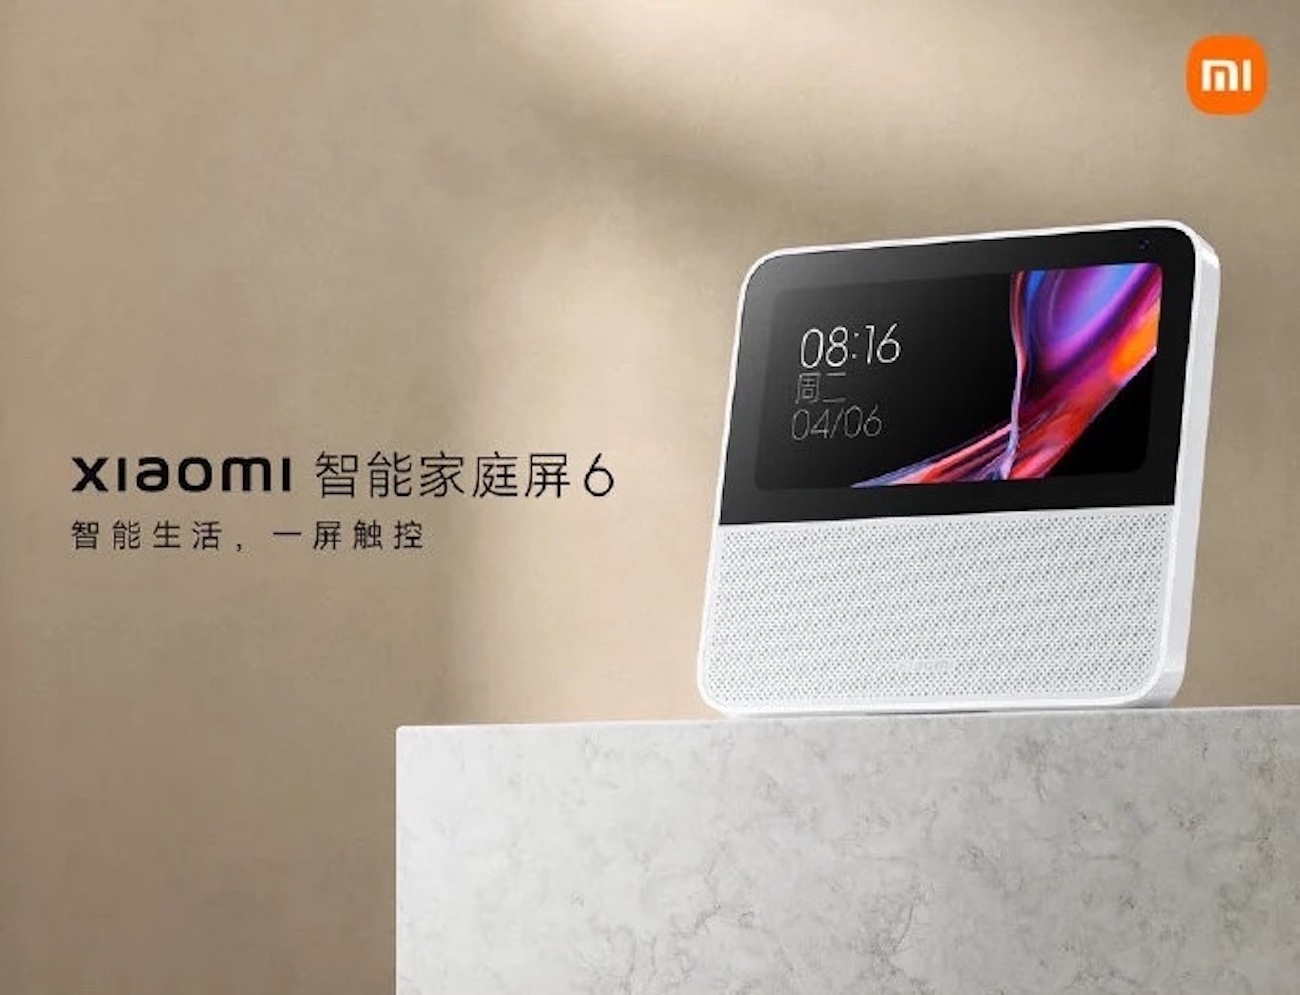 Xiaomi spustilo předprodej chytrého displeje Smart Home Display 6